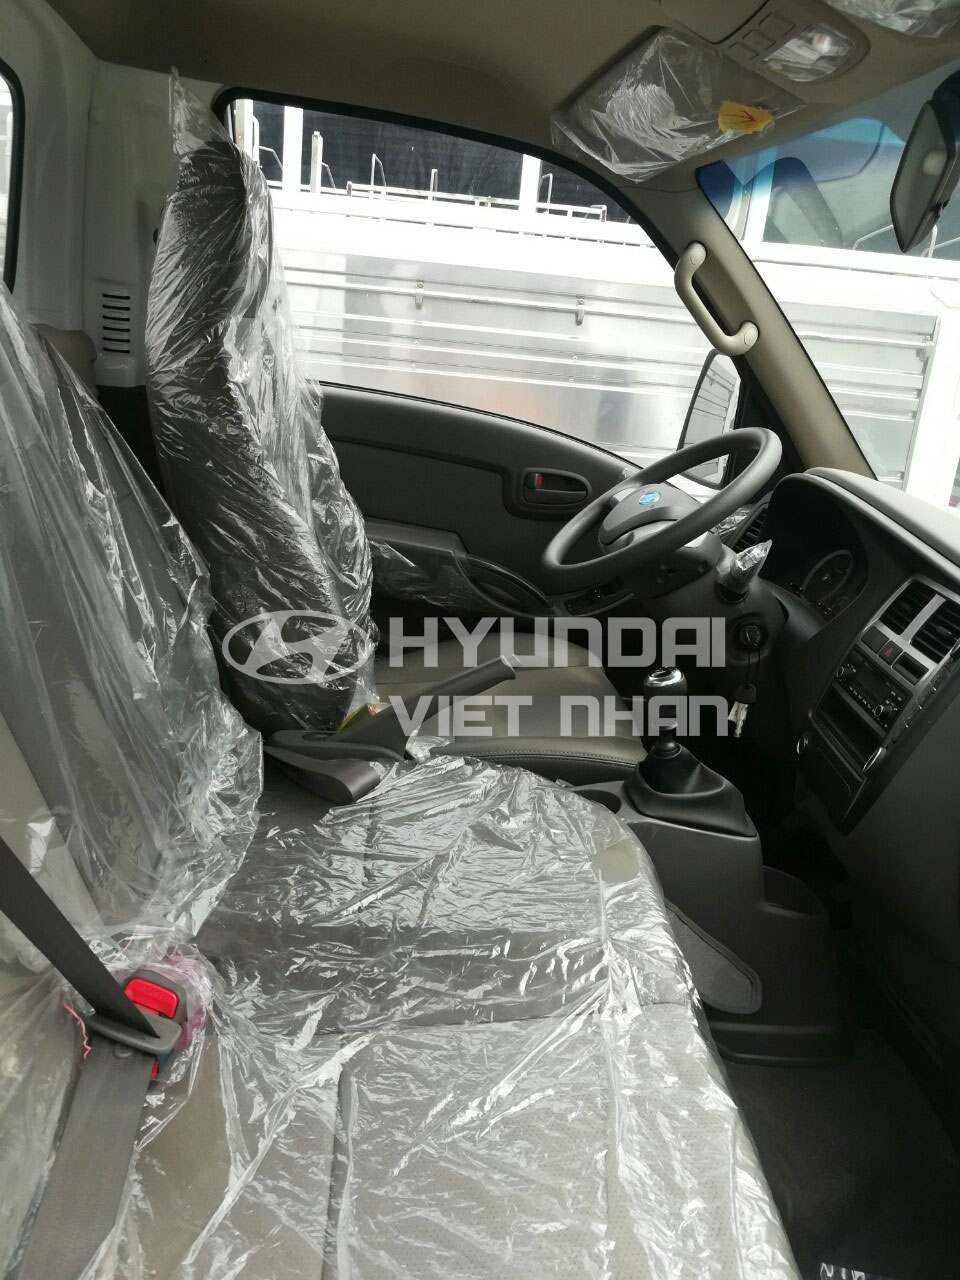 Nội thất Hyundai New Porter H150 siêu rộng rãi